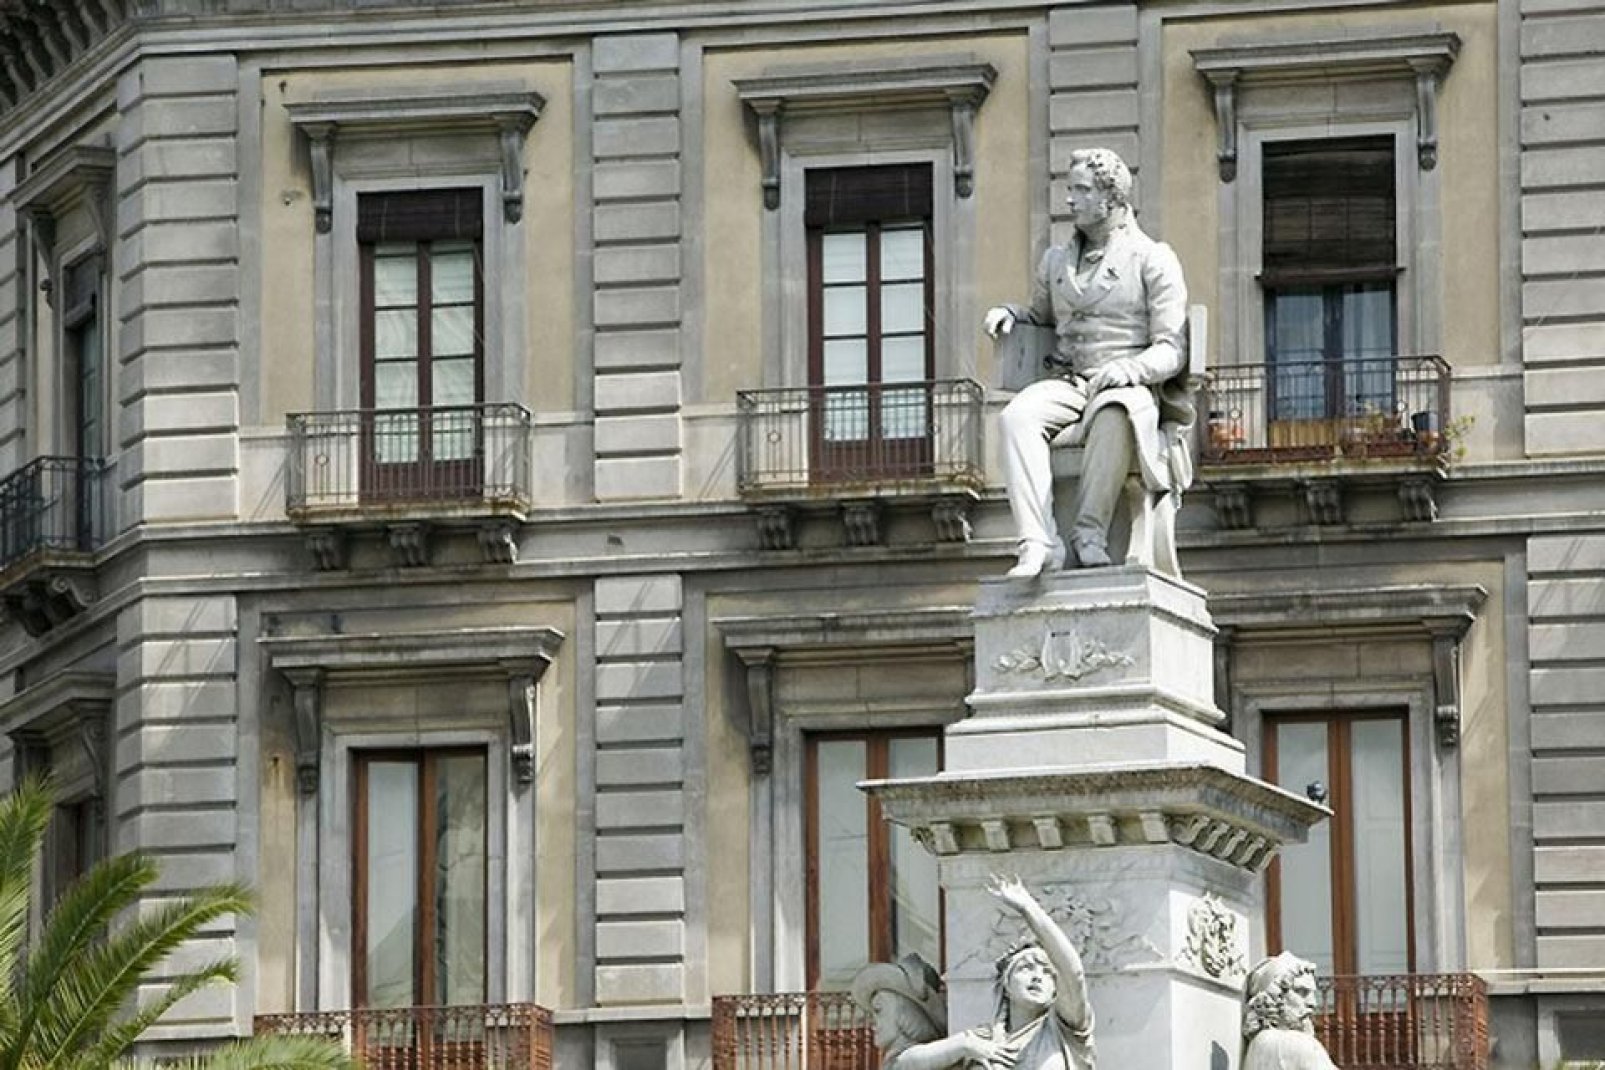 Ein Denkmal zu Ehren Vincenzo Bellinis wurde auf dem Platz Stesicoro in Catania, der Geburtsstadt des Komponisten von Norma, errichtet.